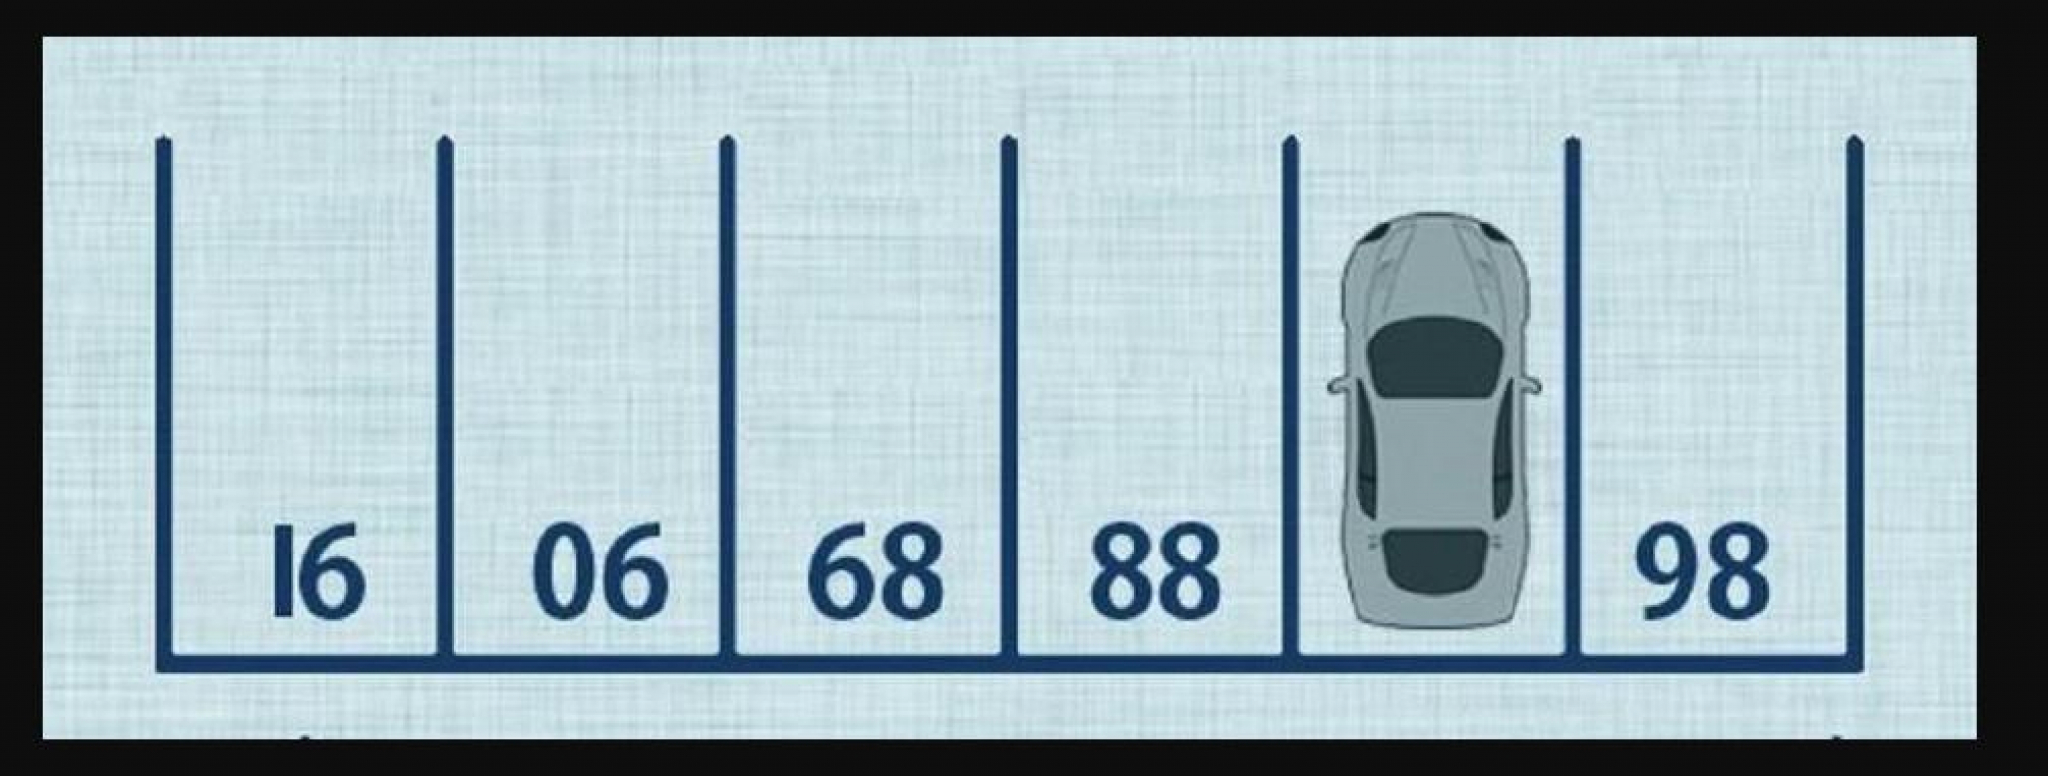 RAZMRDAJTE VIJUGE Nema šanse da pogodite koji se broj krije ispod automobila, ako uspete vi ste genije